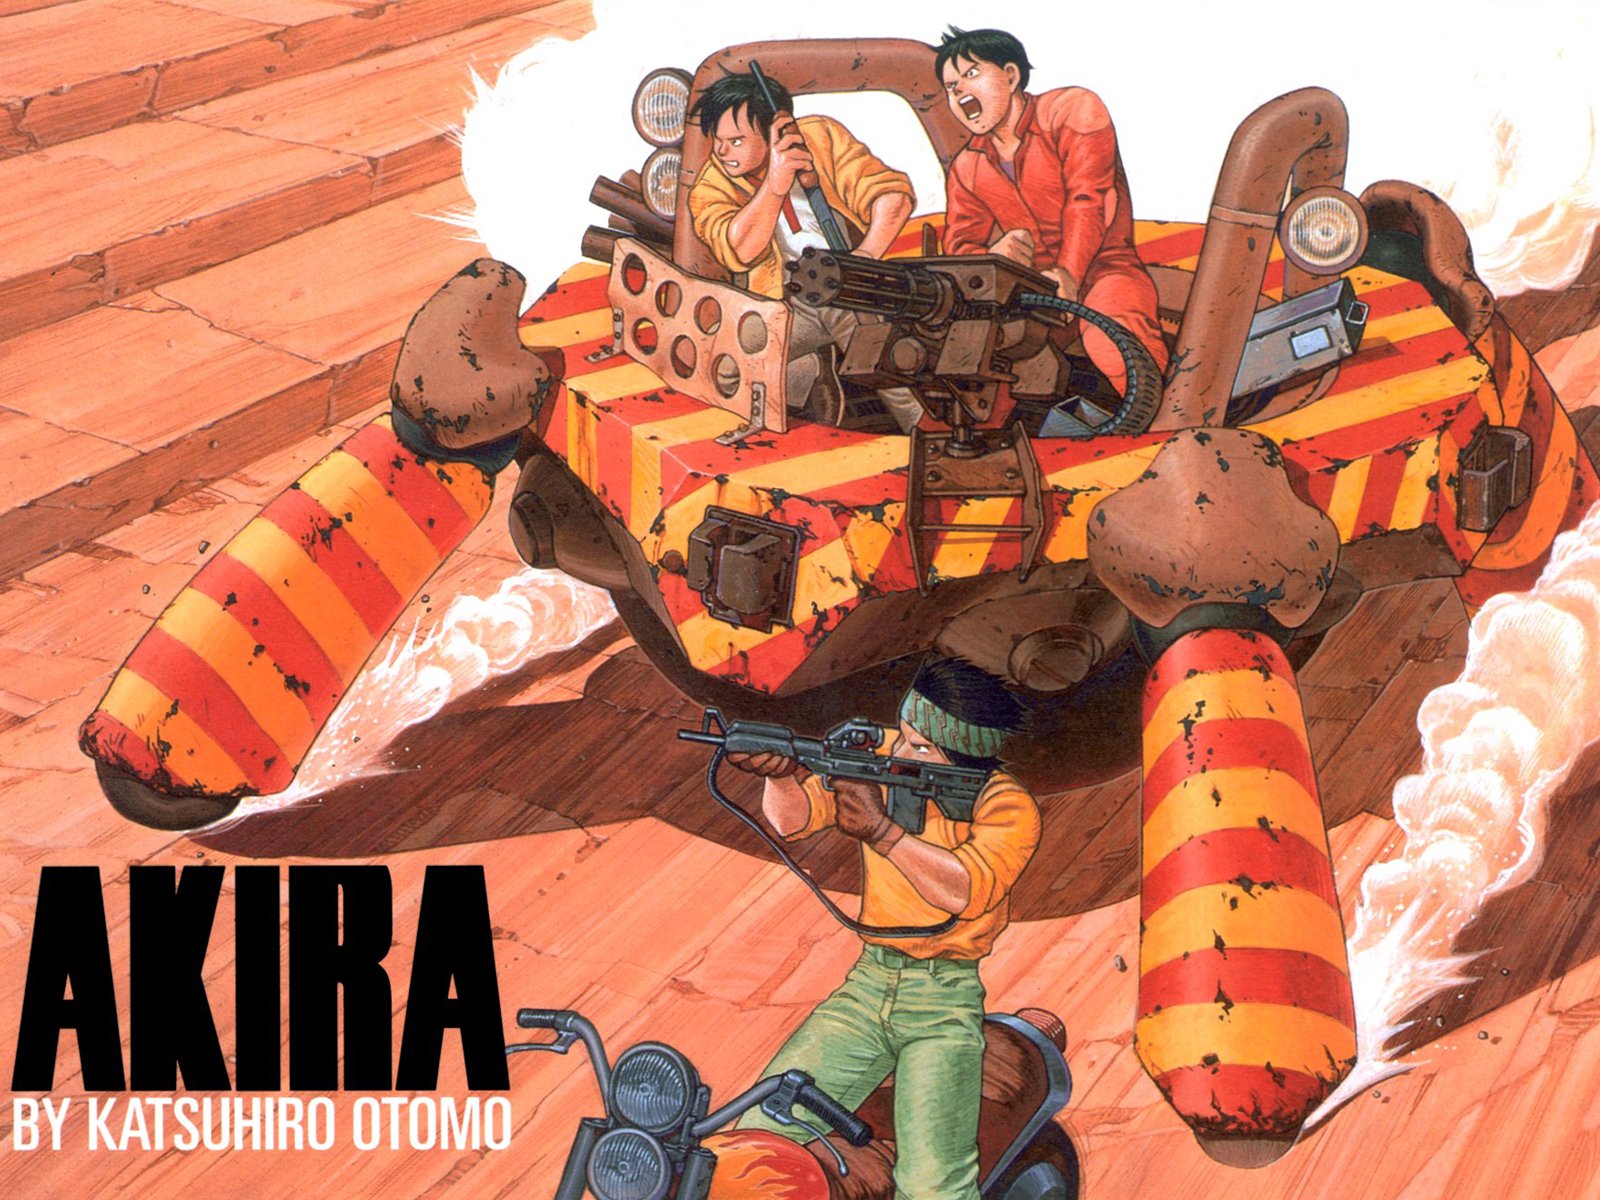 Akira Wallpaper and Background Image | 1600x1200 | ID ...